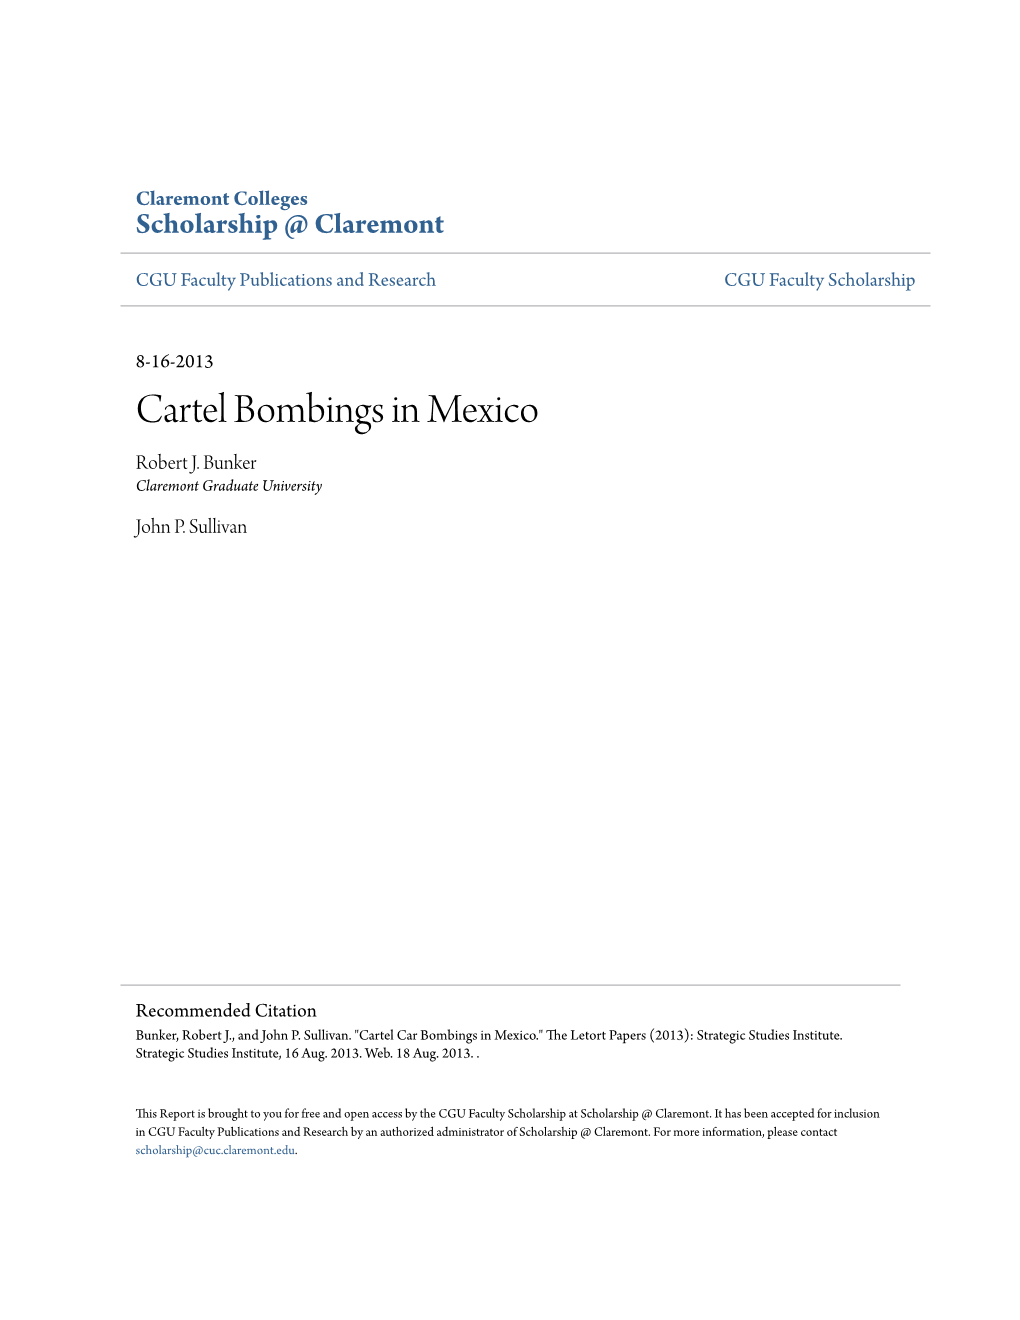 Cartel Bombings in Mexico Robert J